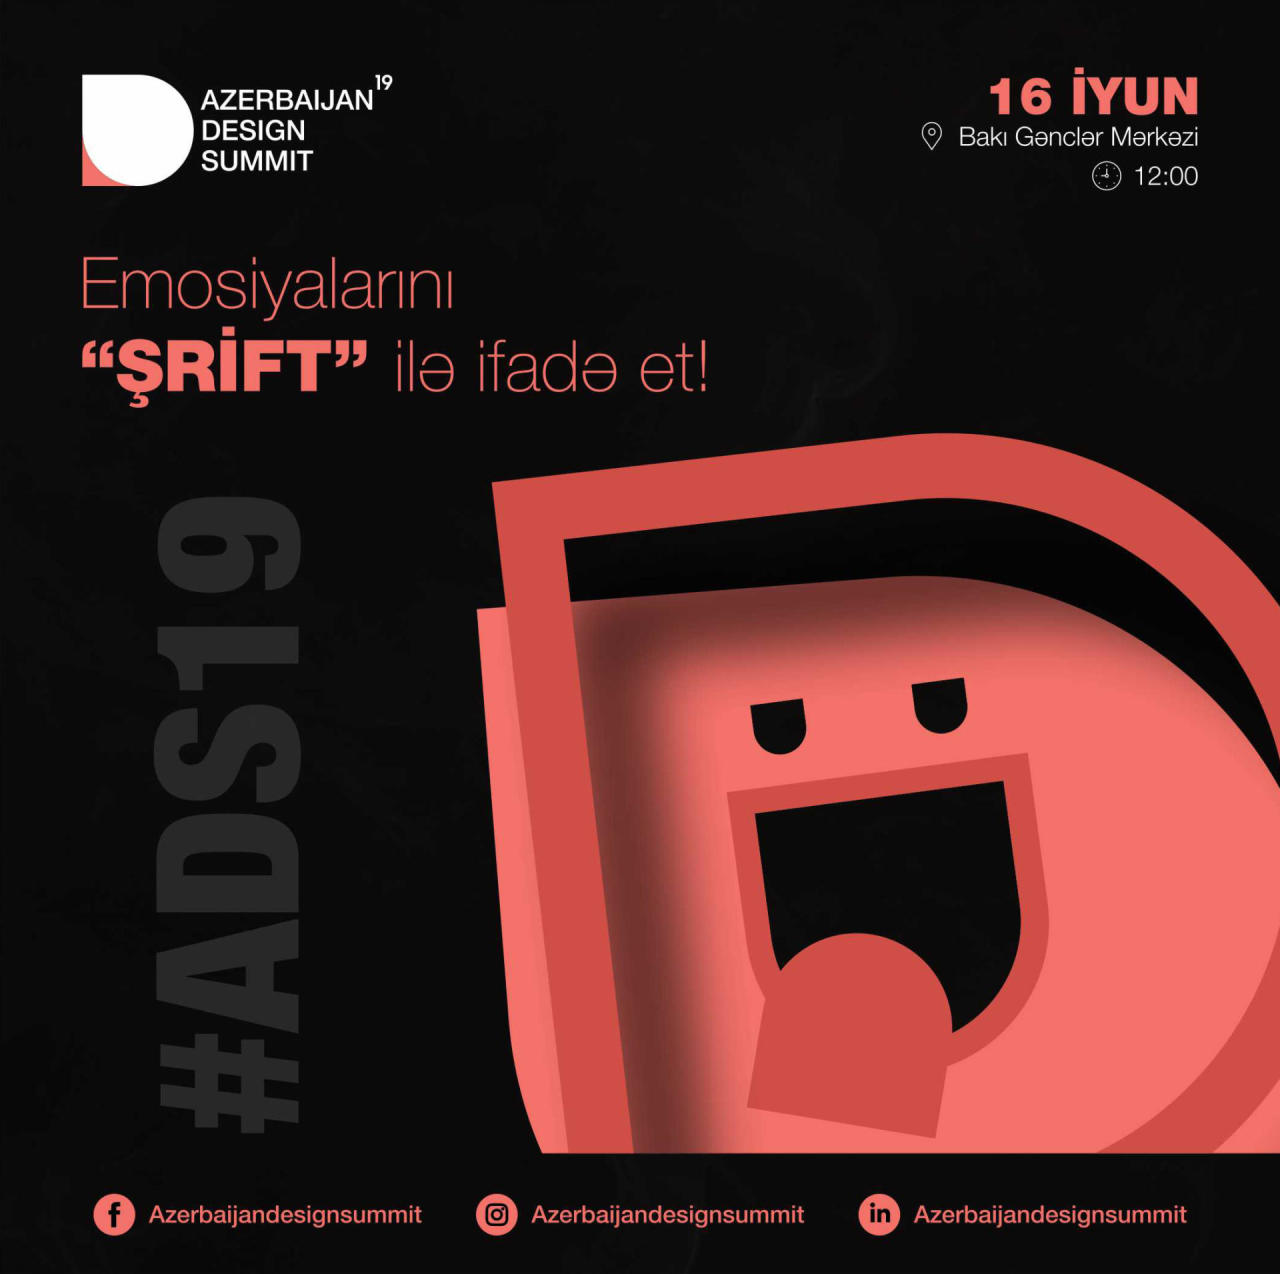 Azerbaijan Design Summit Bakı Gənclər Mərkəzində keçiriləcək